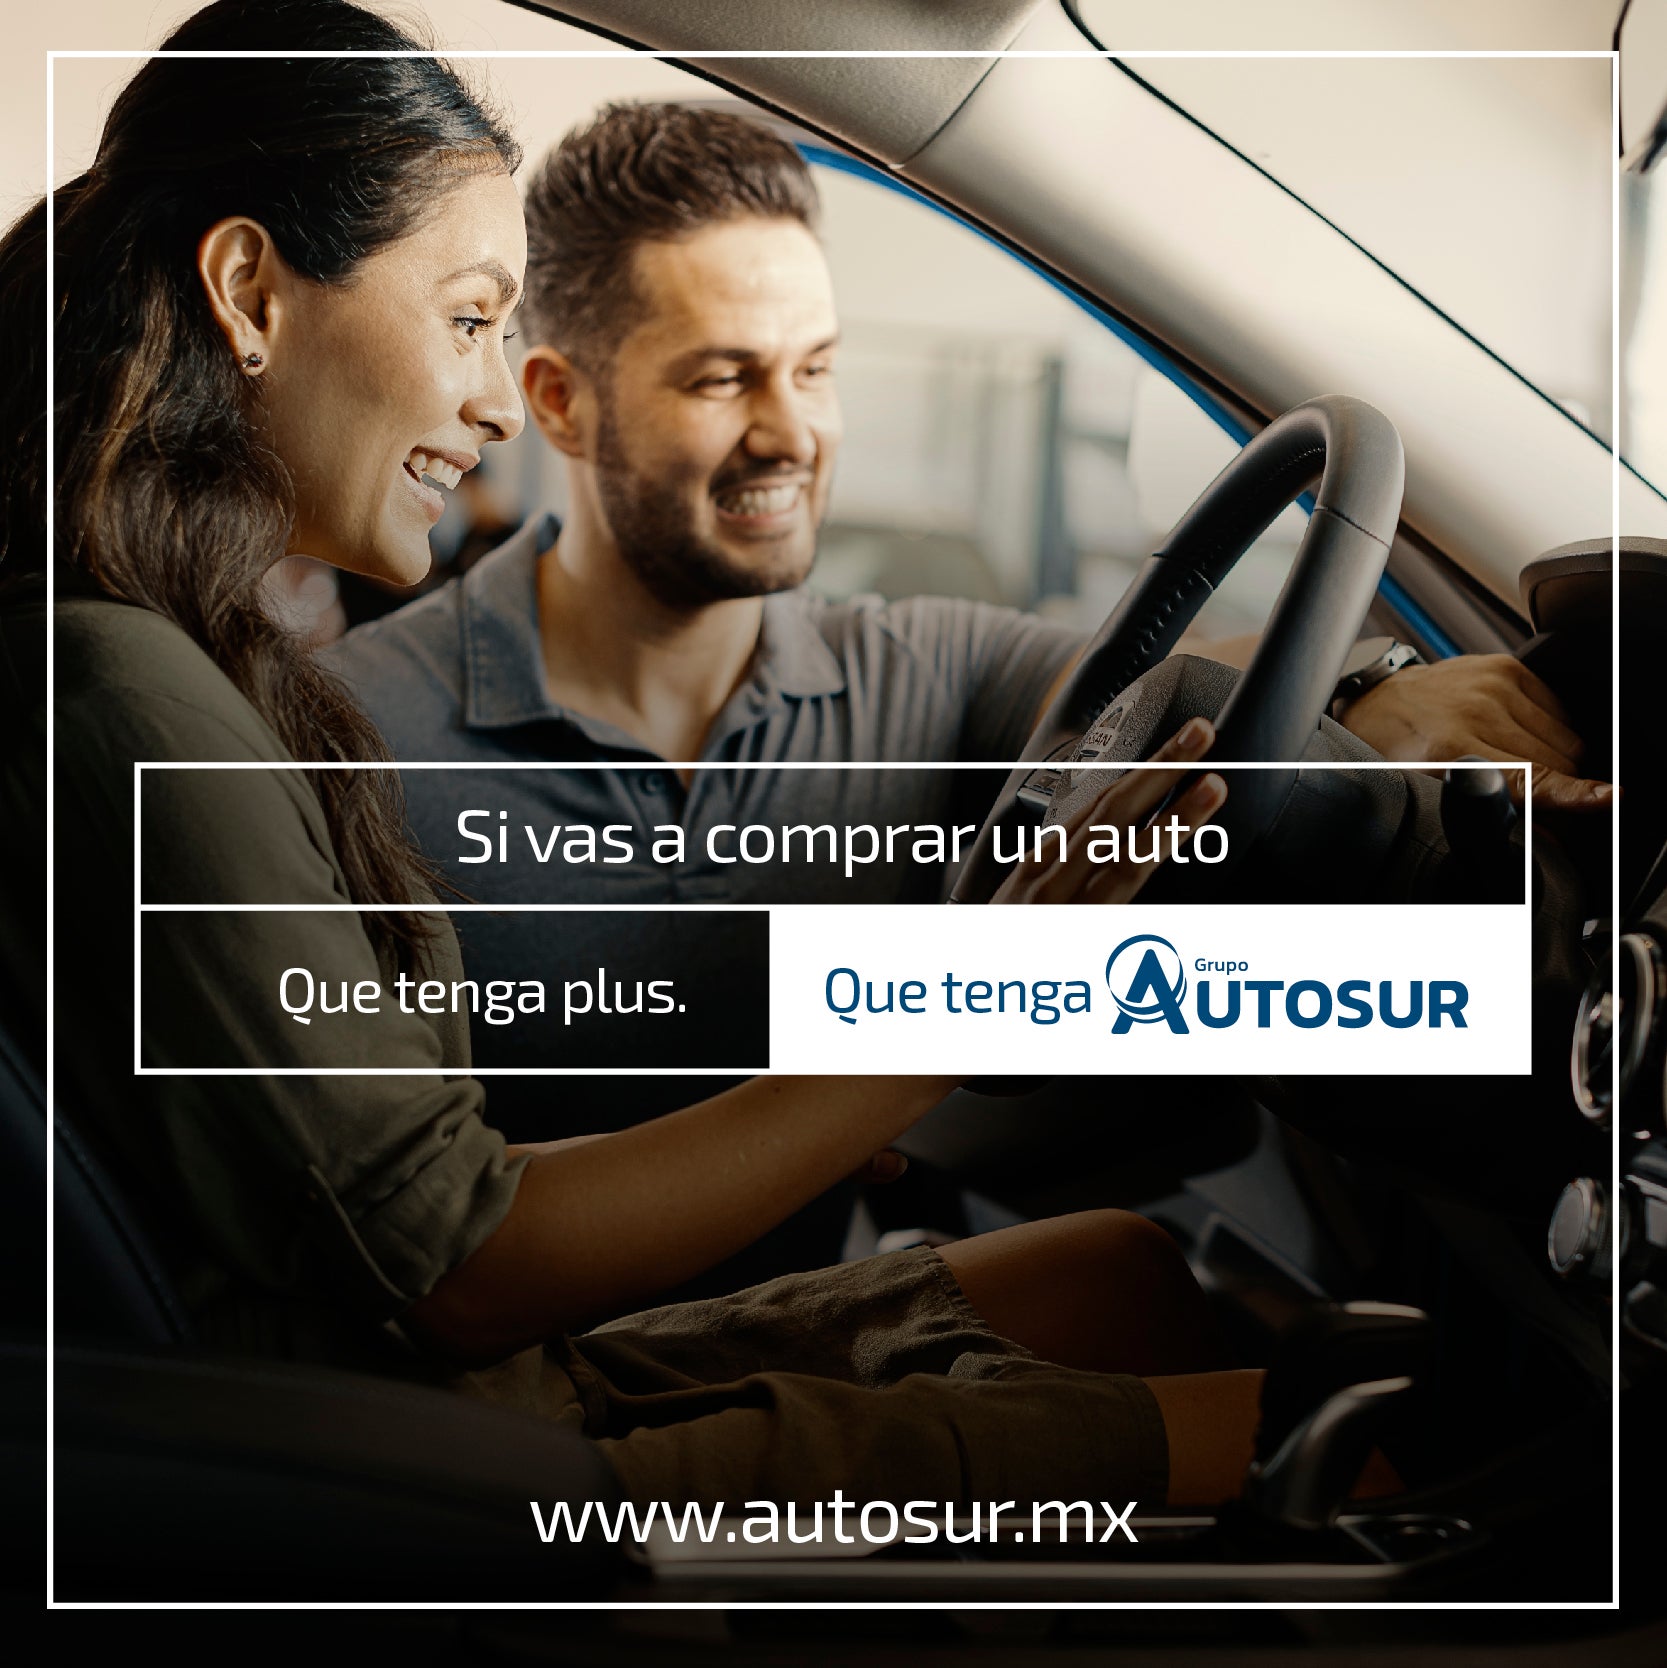 www.autosur.mx